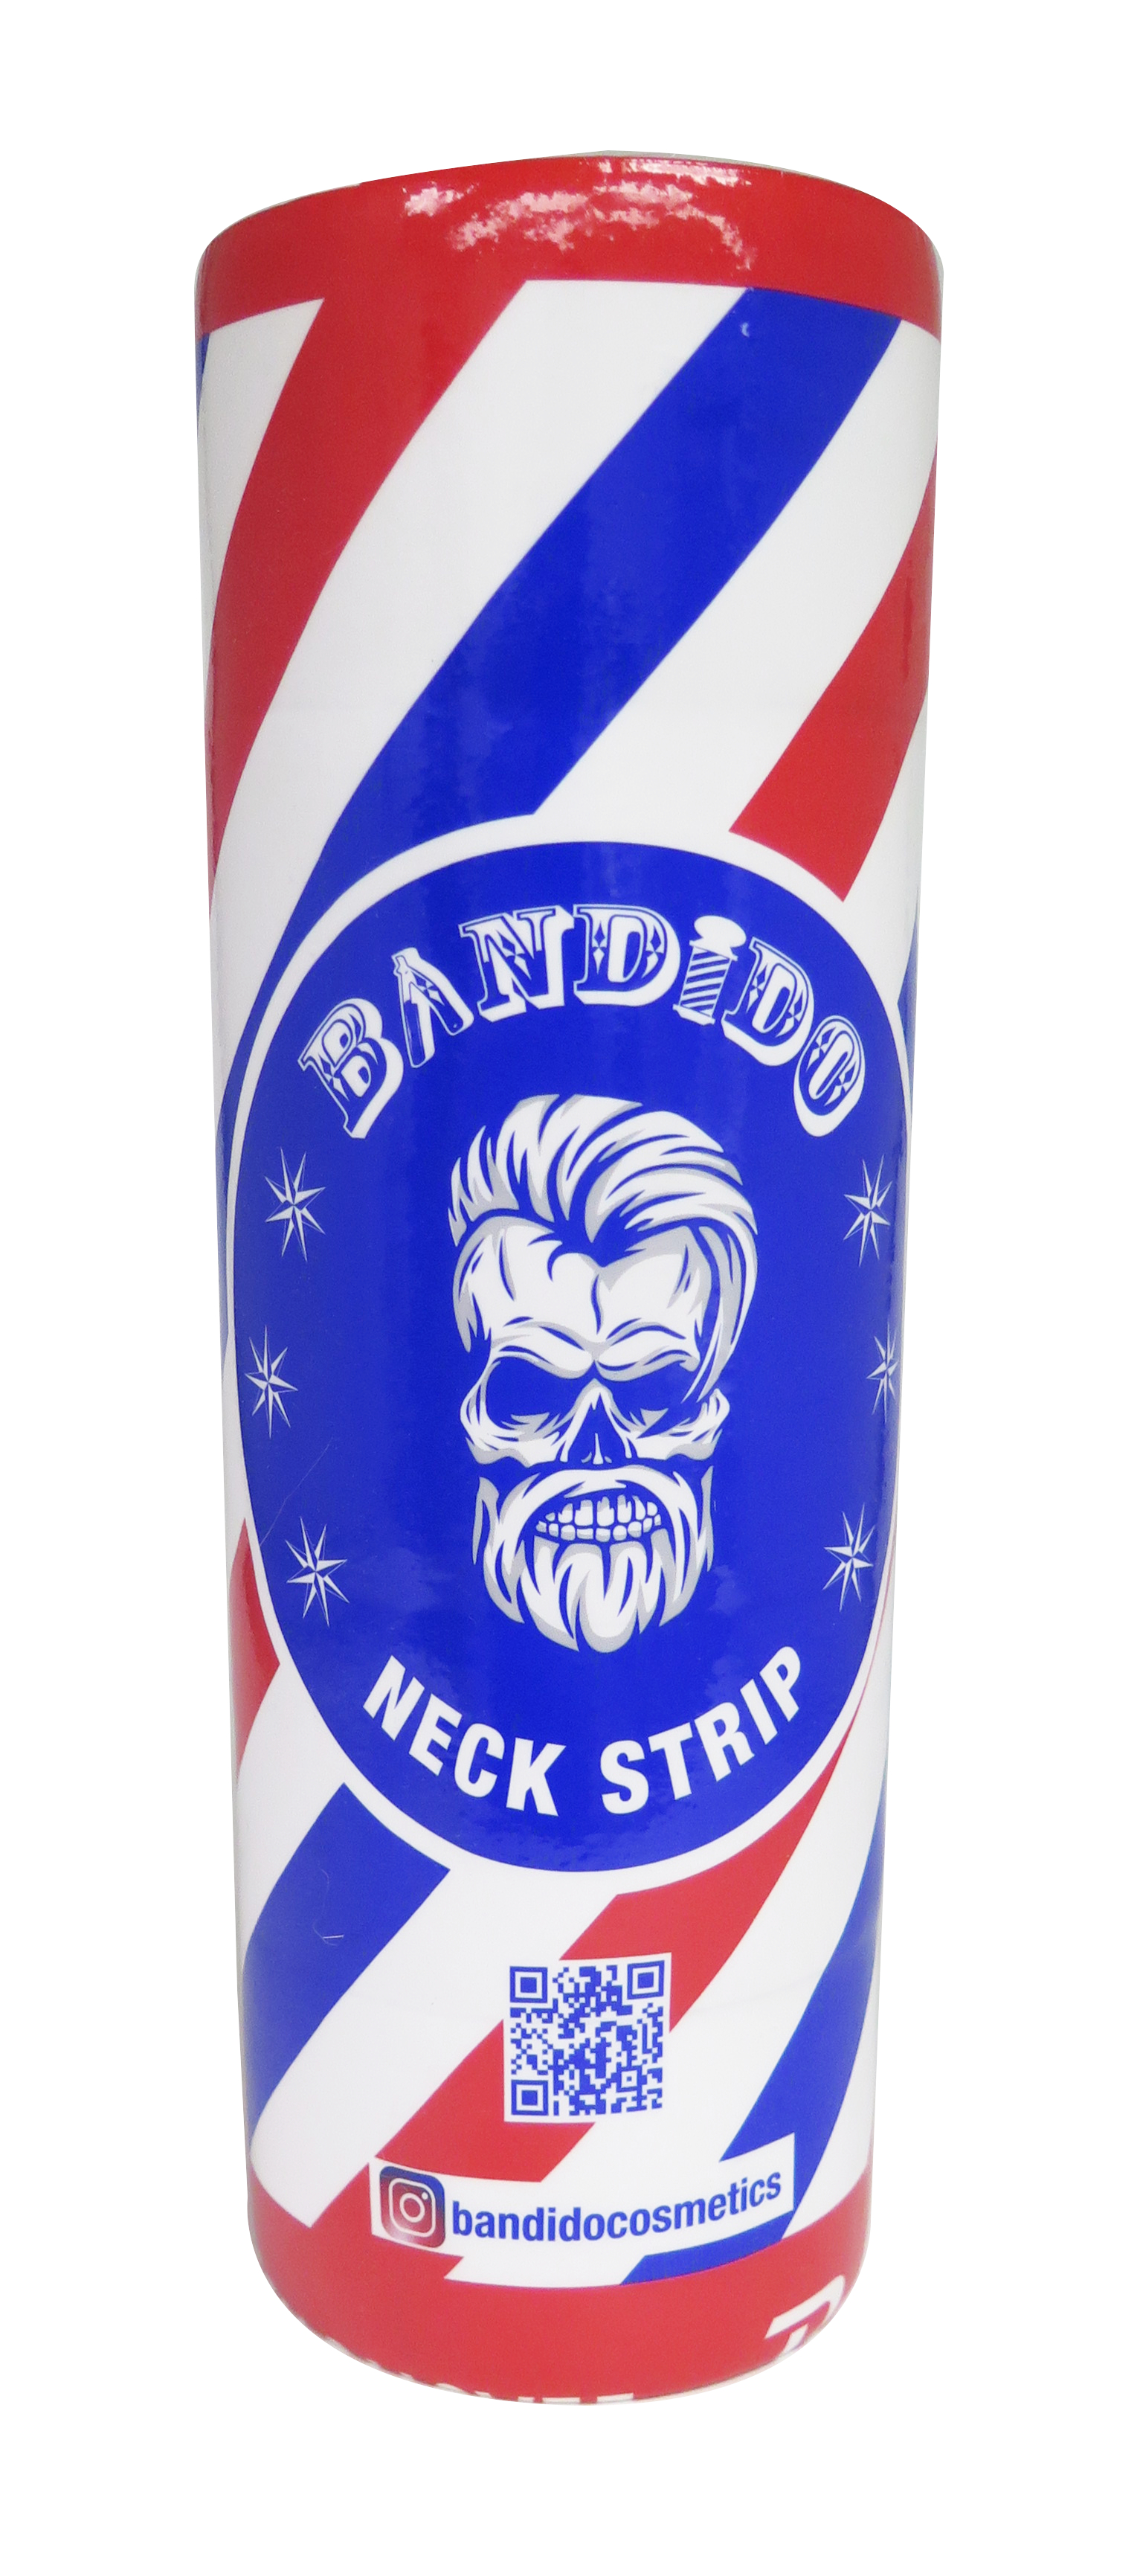 Bandido Neck Strip 